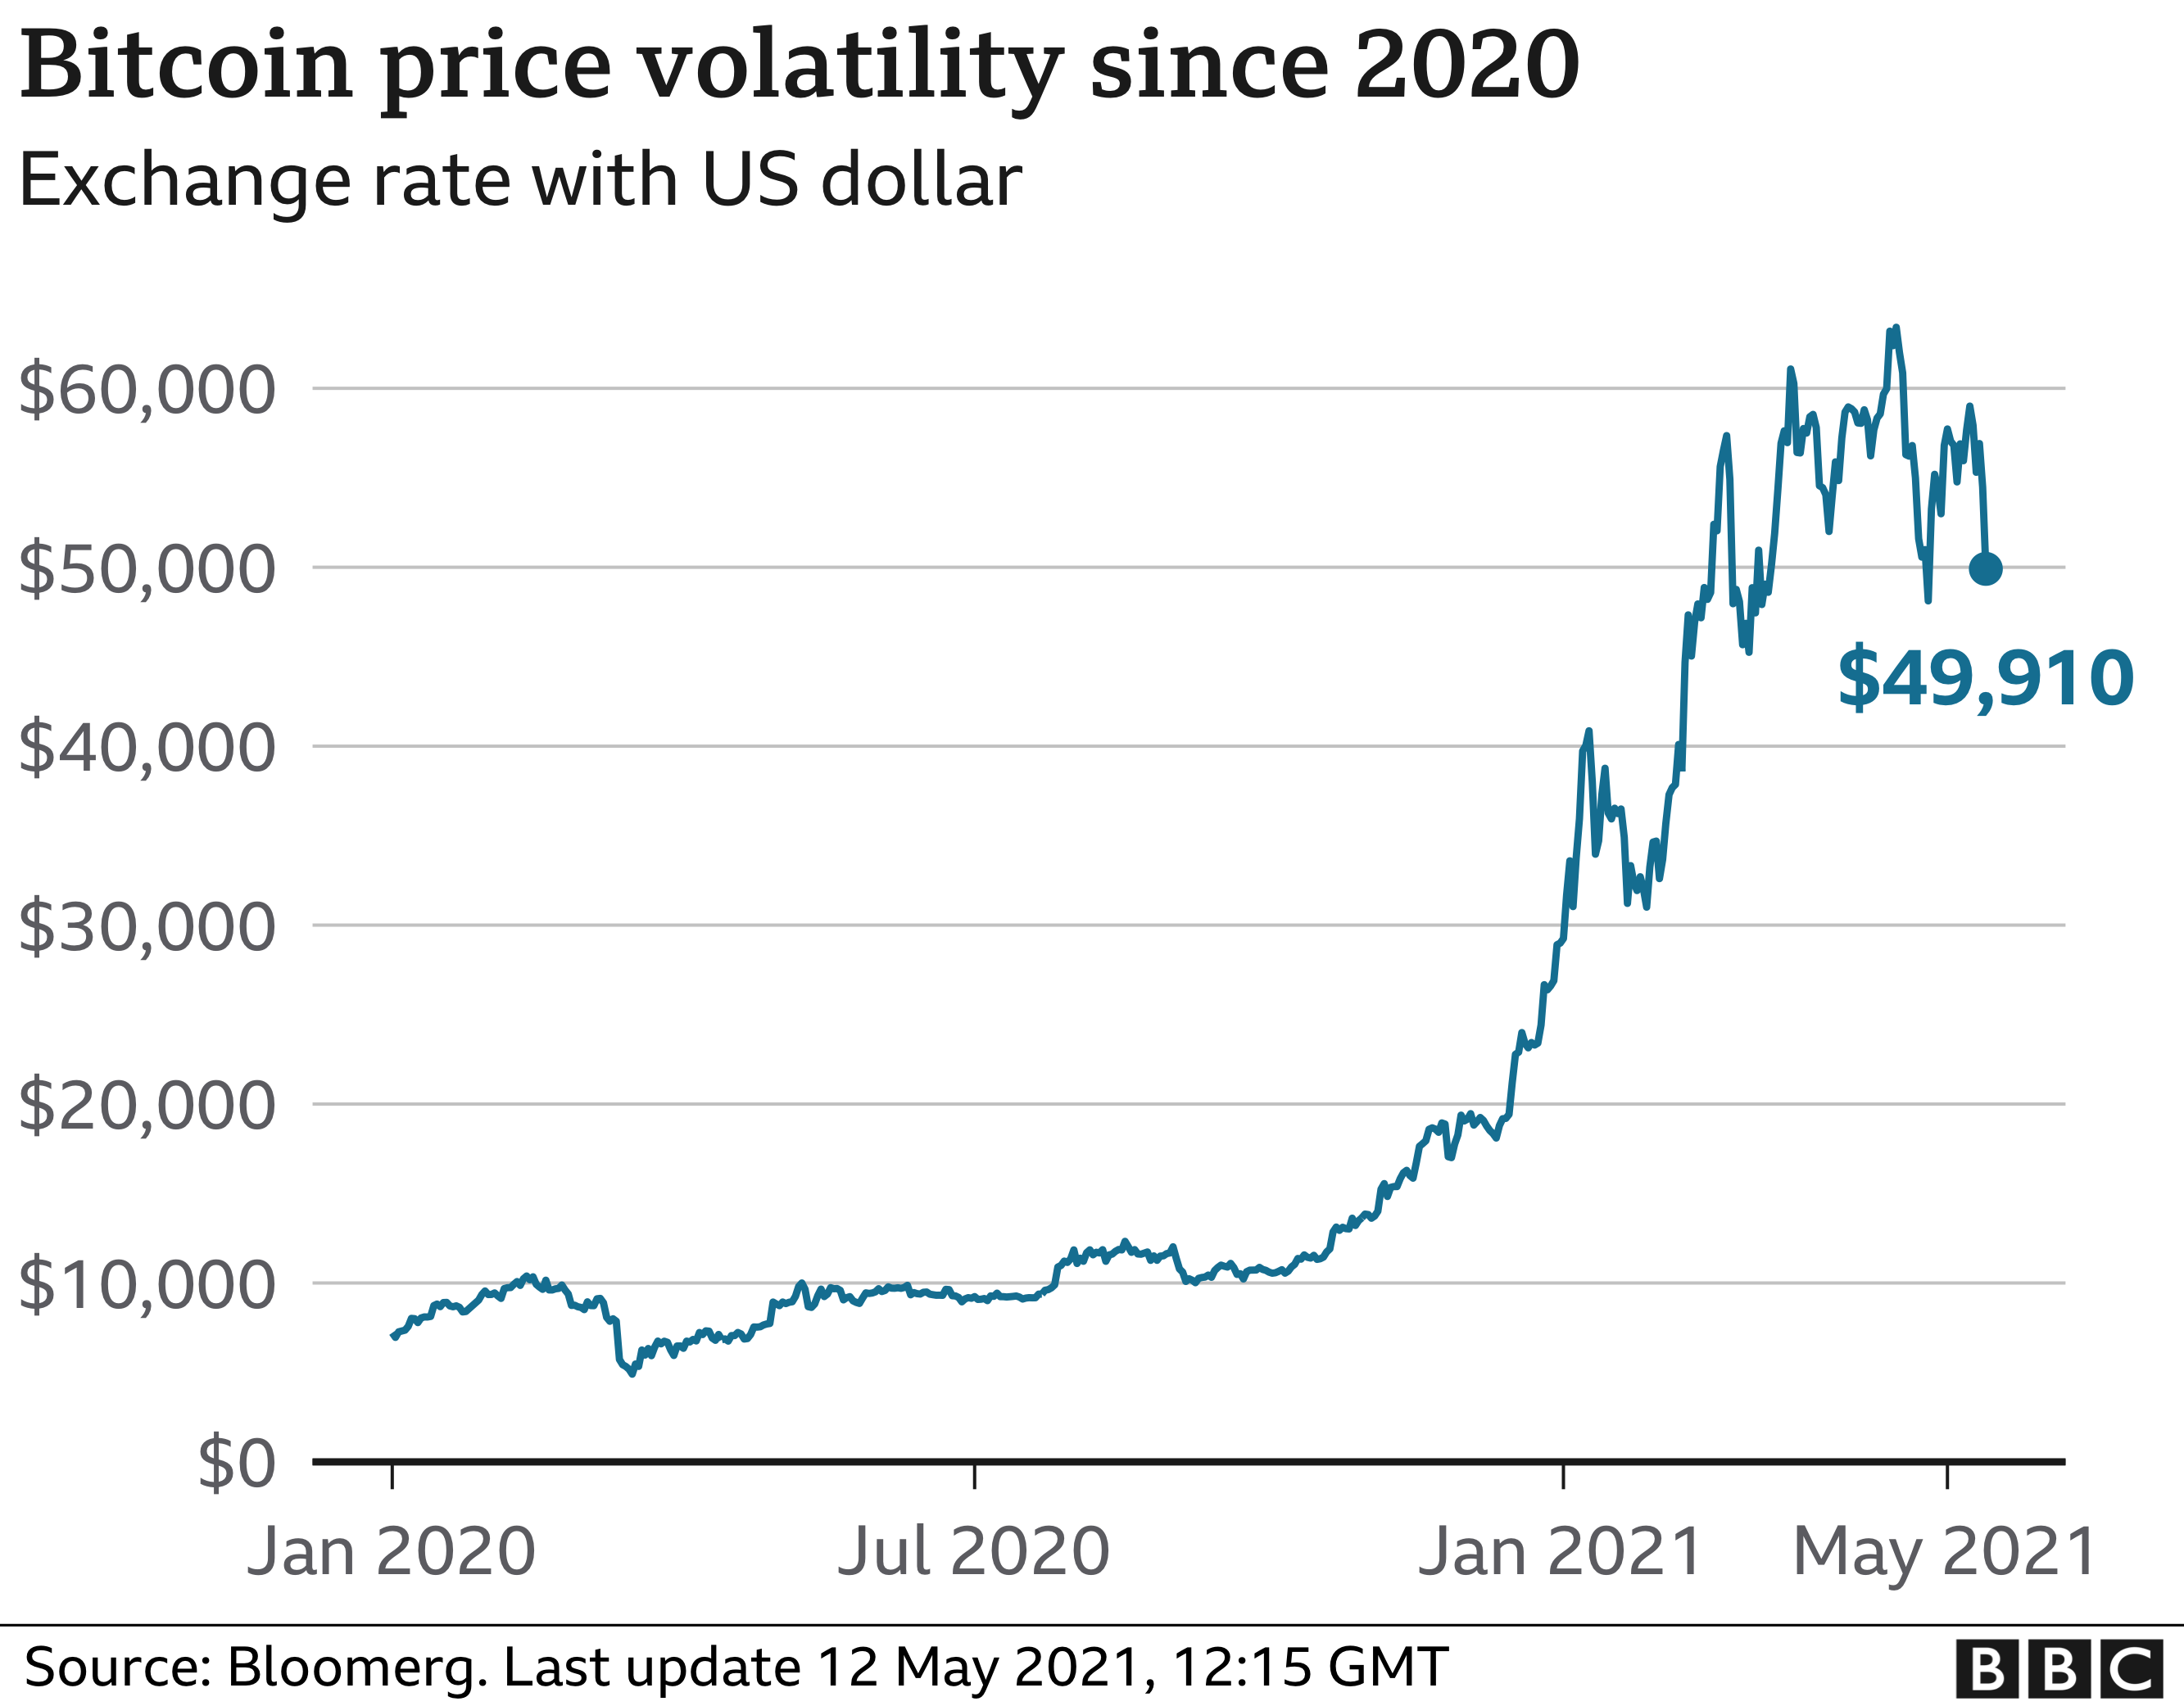 Bitcoin ความผันผวนของราคาตั้งแต่ปี 2020 ที่มา: BBC News.